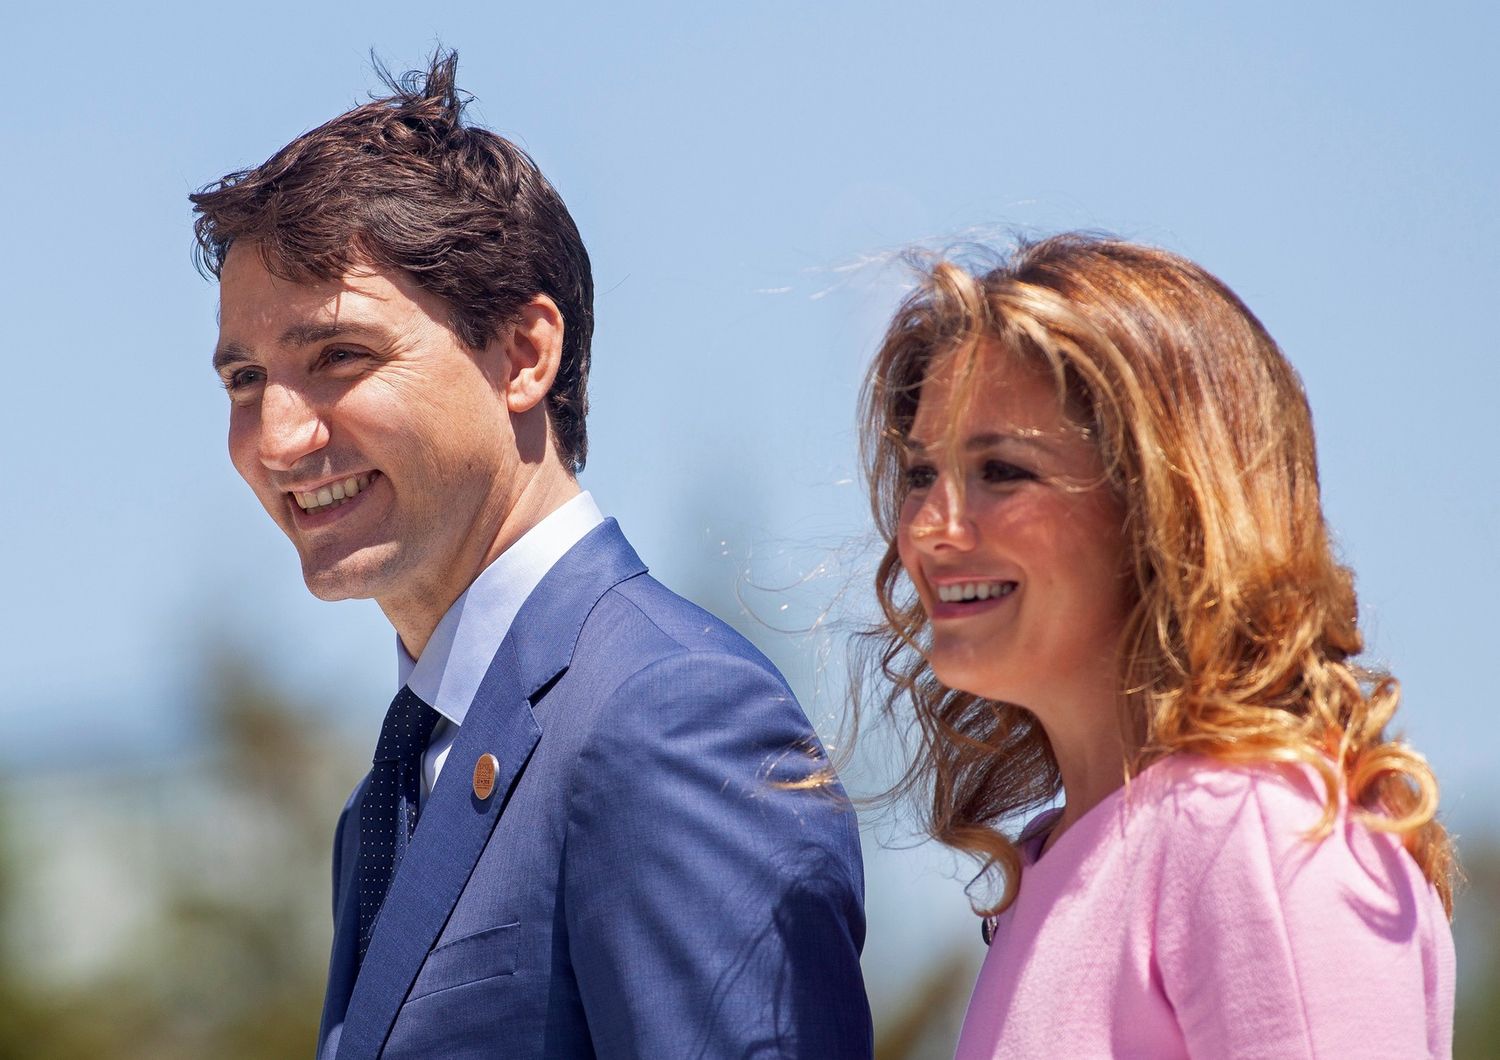 Il premier canadese Justin Trudeau con la moglie